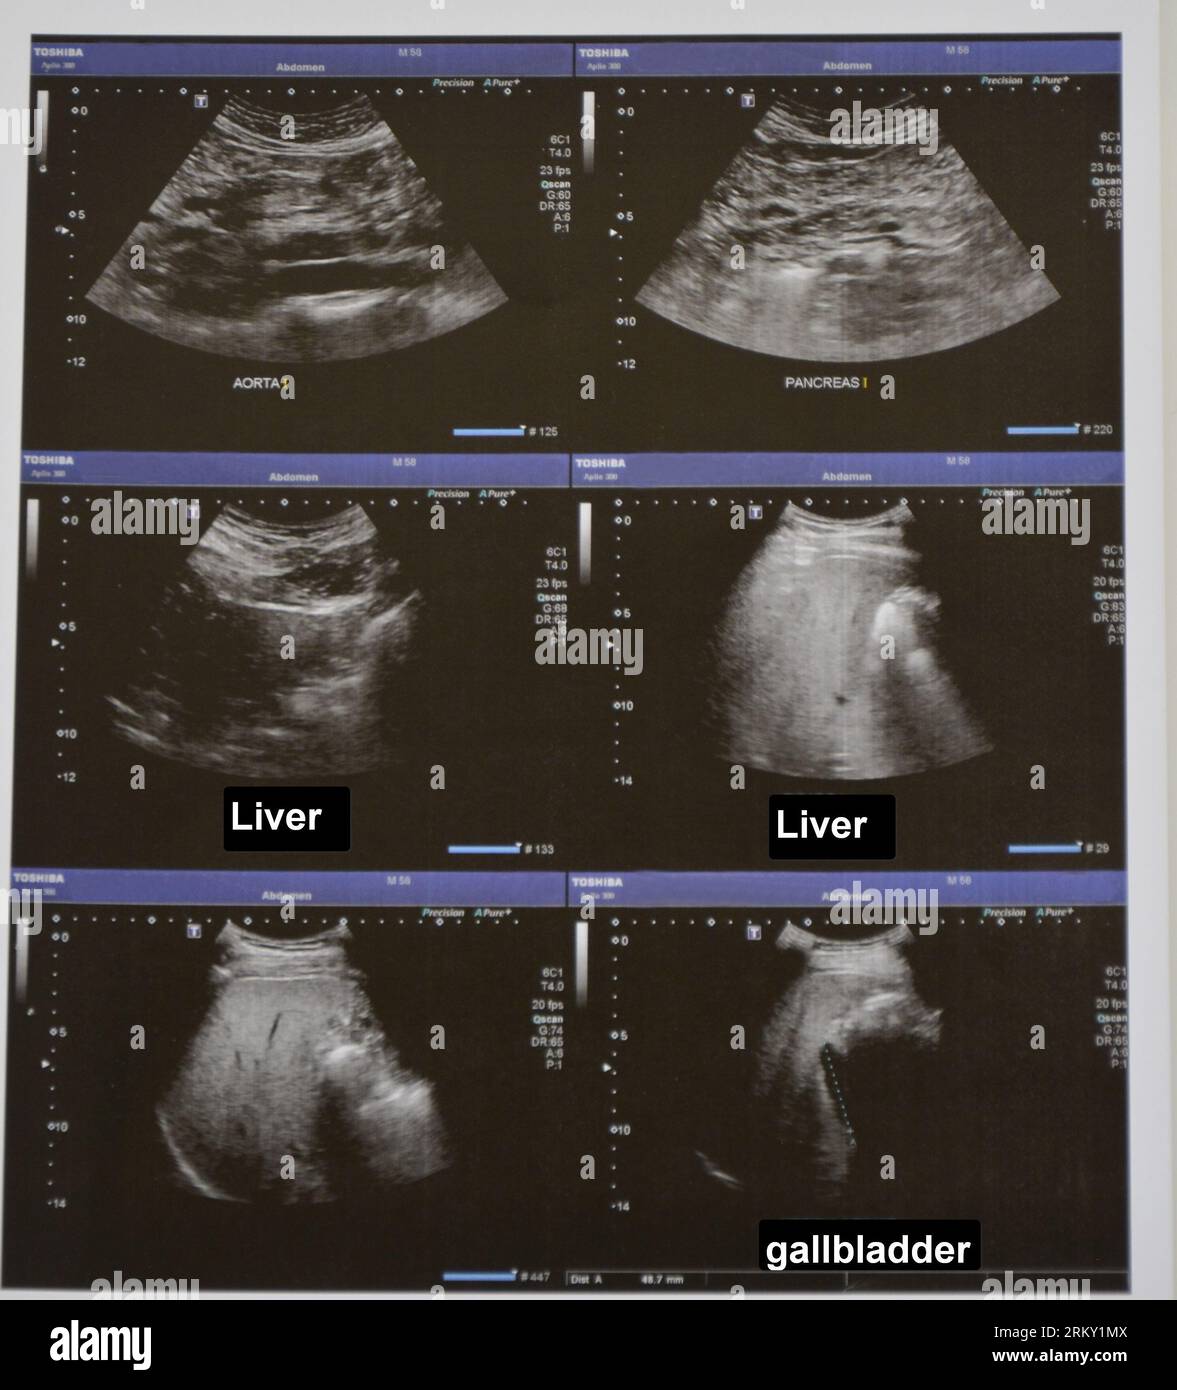 Échographie de l'abdomen supérieur avec visualisation des parties de l'aorte, du pancréas, du foie et de la vésicule biliaire Banque D'Images